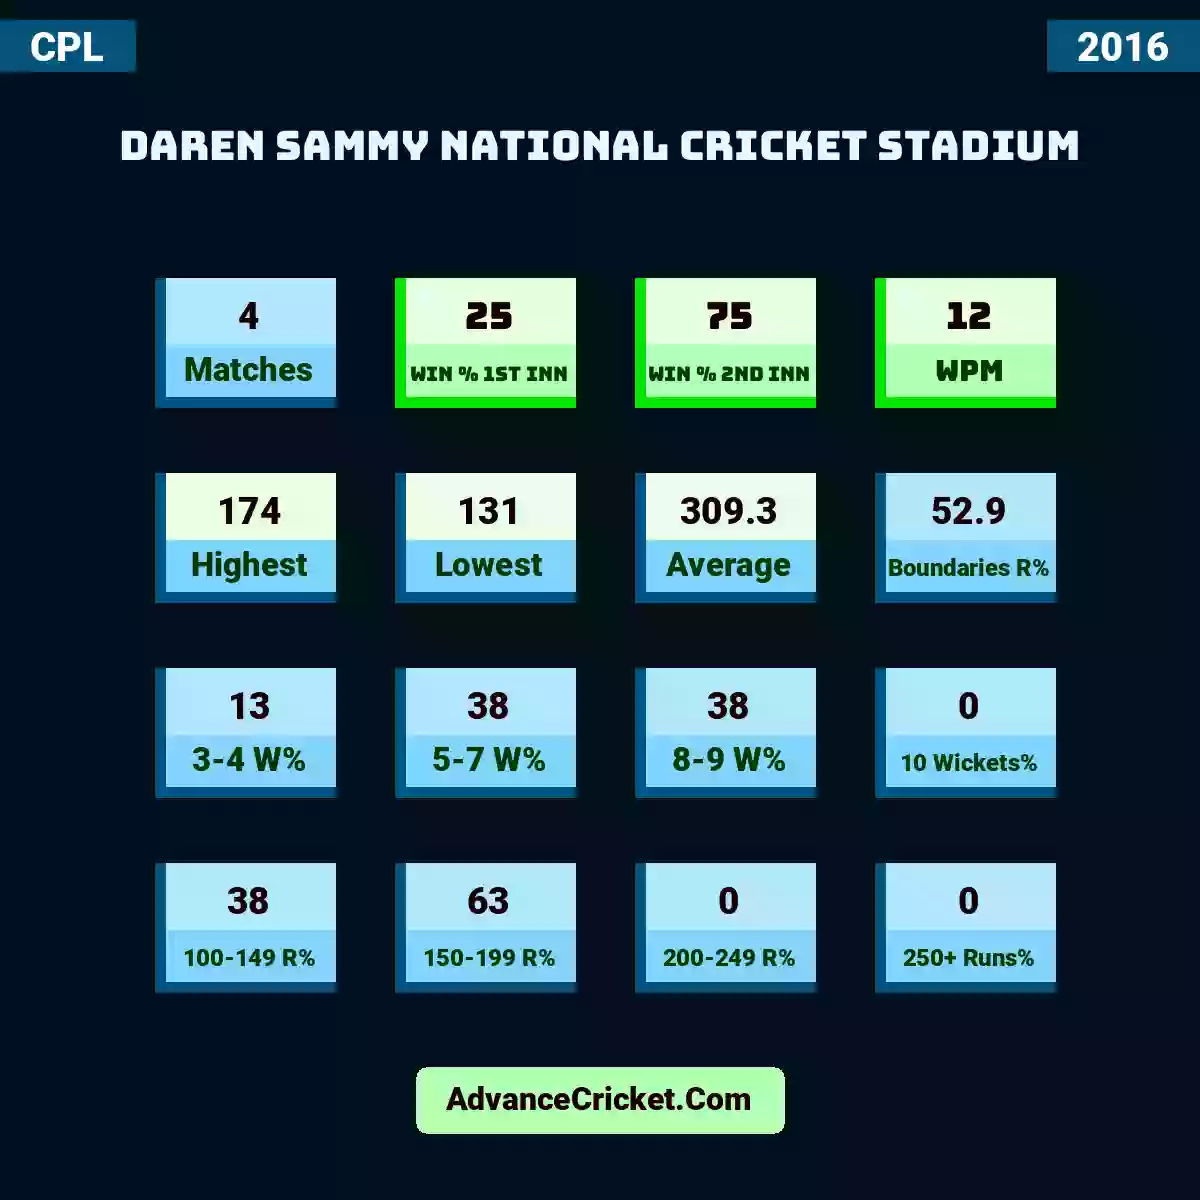 Image showing Daren Sammy National Cricket Stadium with Matches: 4, Win % 1st Inn: 25, Win % 2nd Inn: 75, WPM: 12, Highest: 174, Lowest: 131, Average: 309.3, Boundaries R%: 52.9, 3-4 W%: 13, 5-7 W%: 38, 8-9 W%: 38, 10 Wickets%: 0, 100-149 R%: 38, 150-199 R%: 63, 200-249 R%: 0, 250+ Runs%: 0.